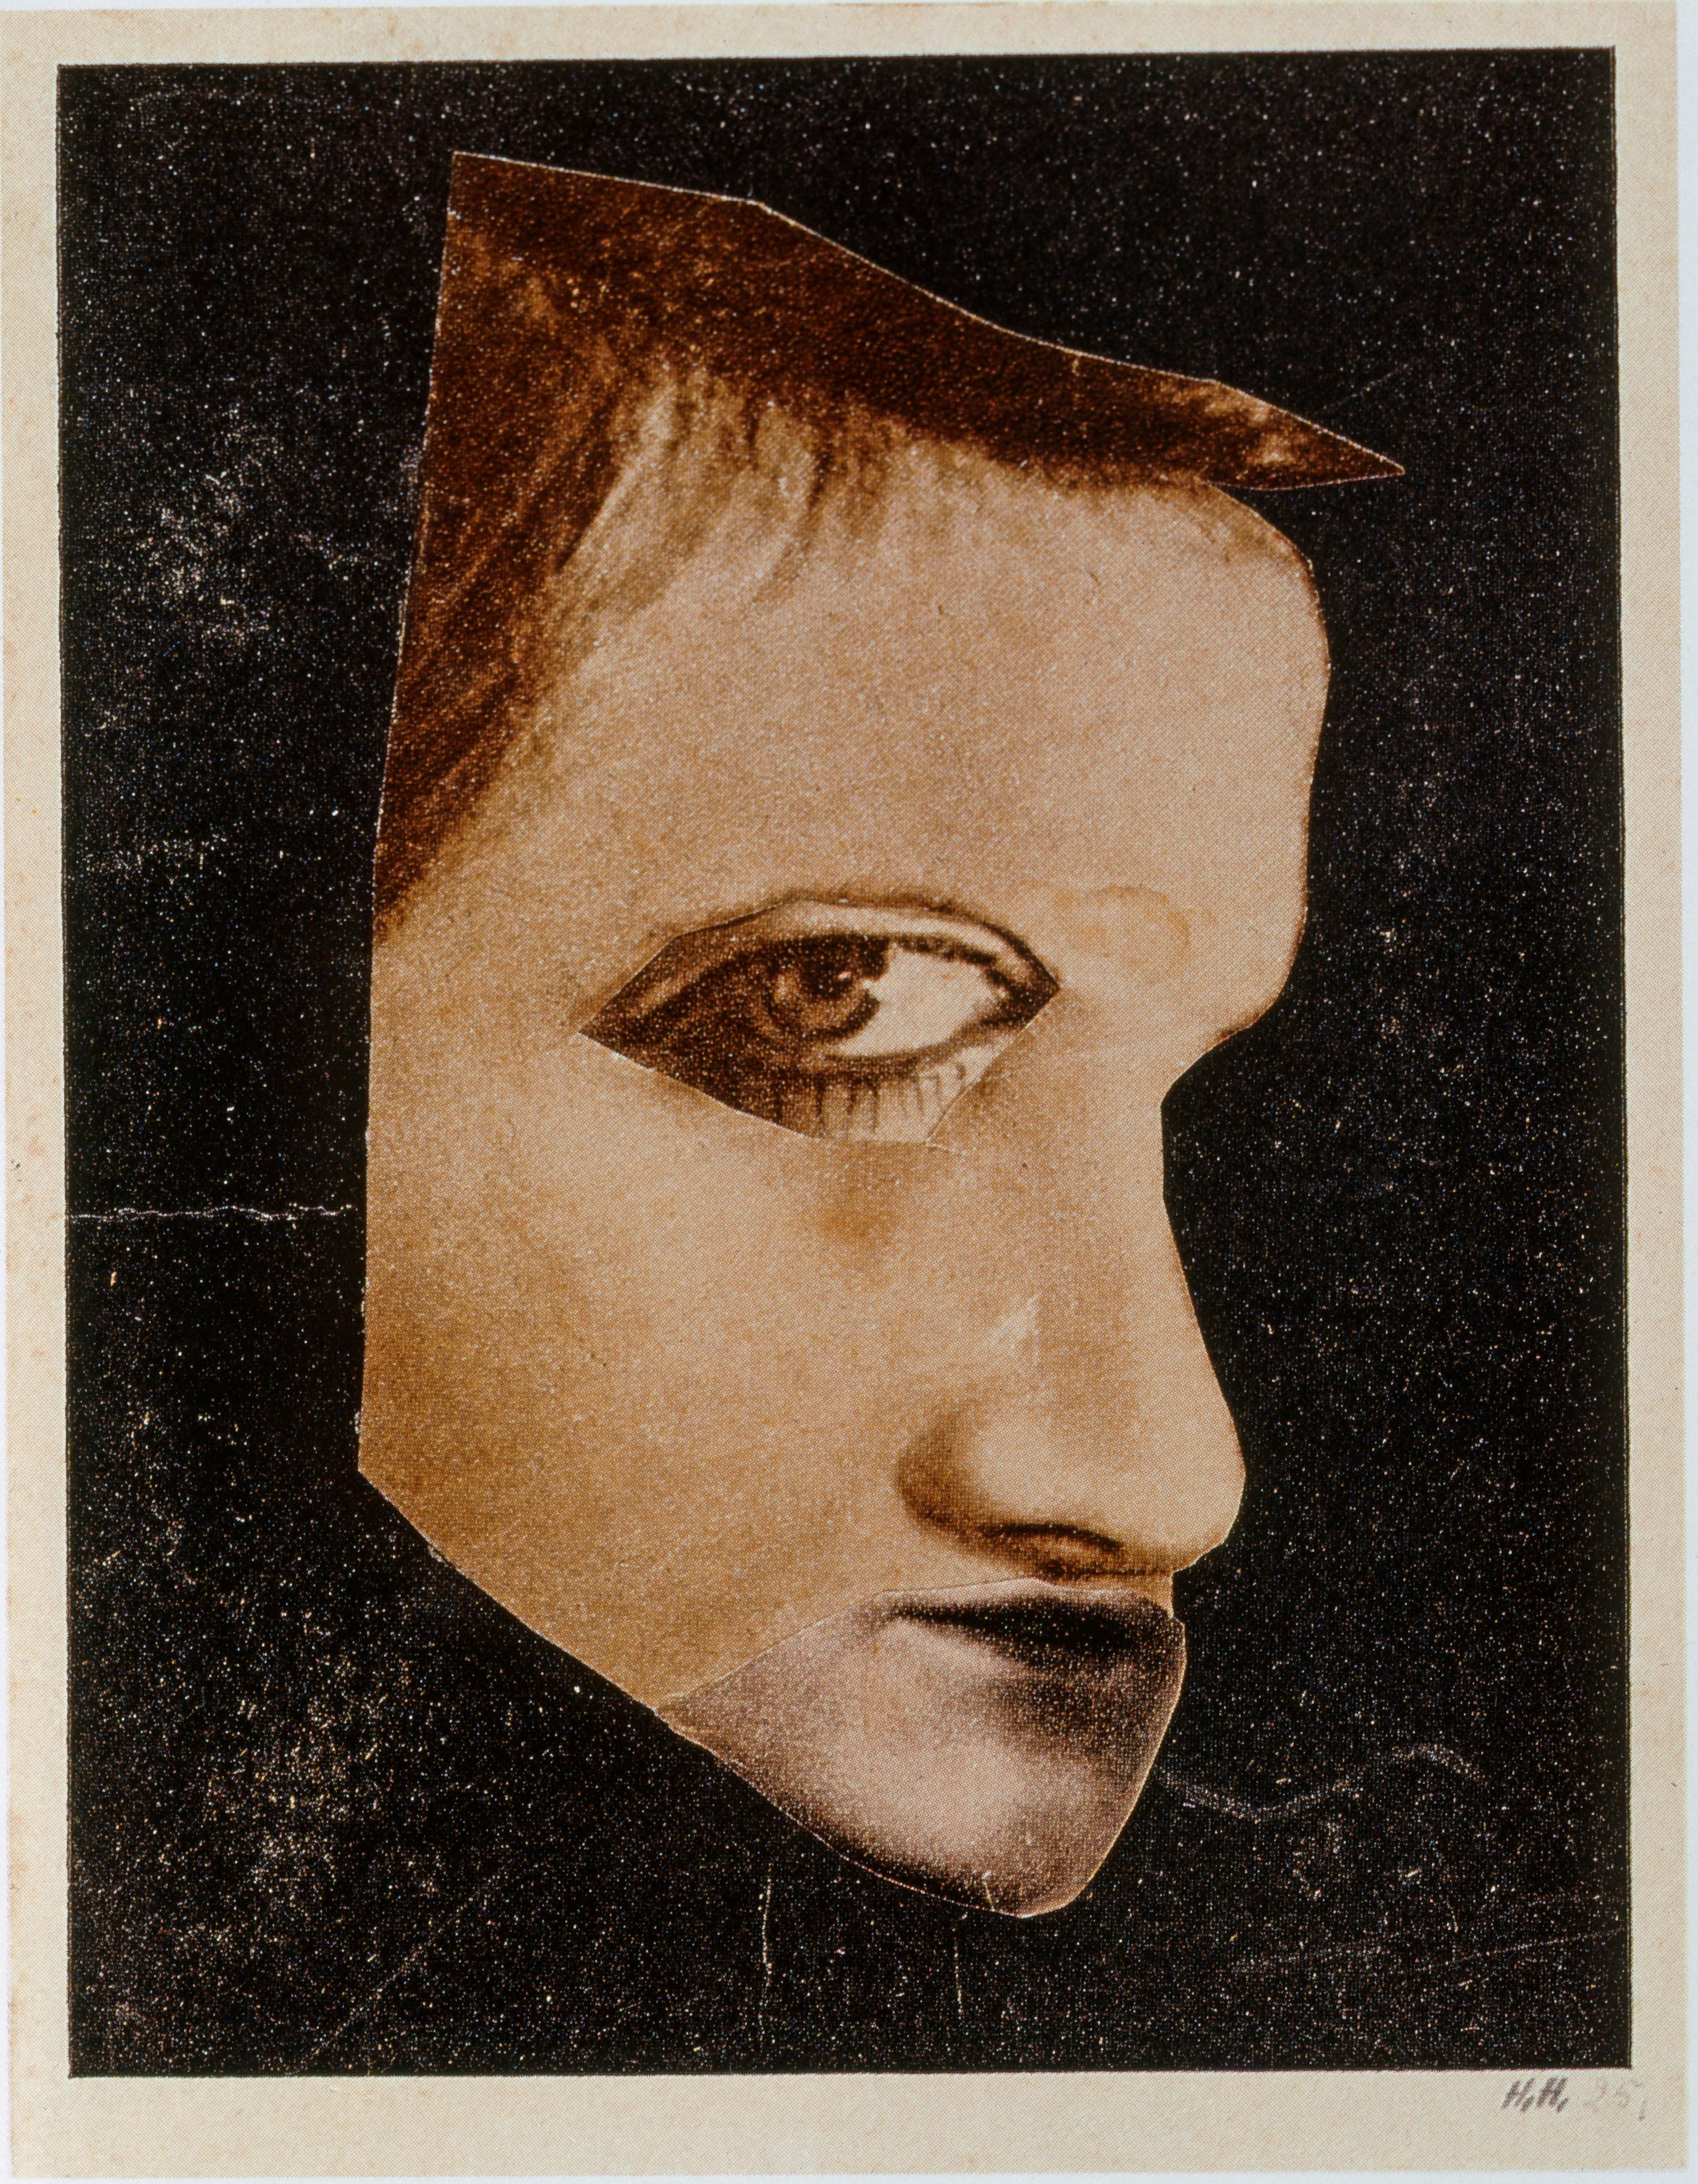 Hannah Höch, Der Melancholiker, 1925, Collage, 16,8 x 13 cm, Institut für Auslandsbeziehungen e. V., Stuttgart, © 2023, ProLitteris, Zurich